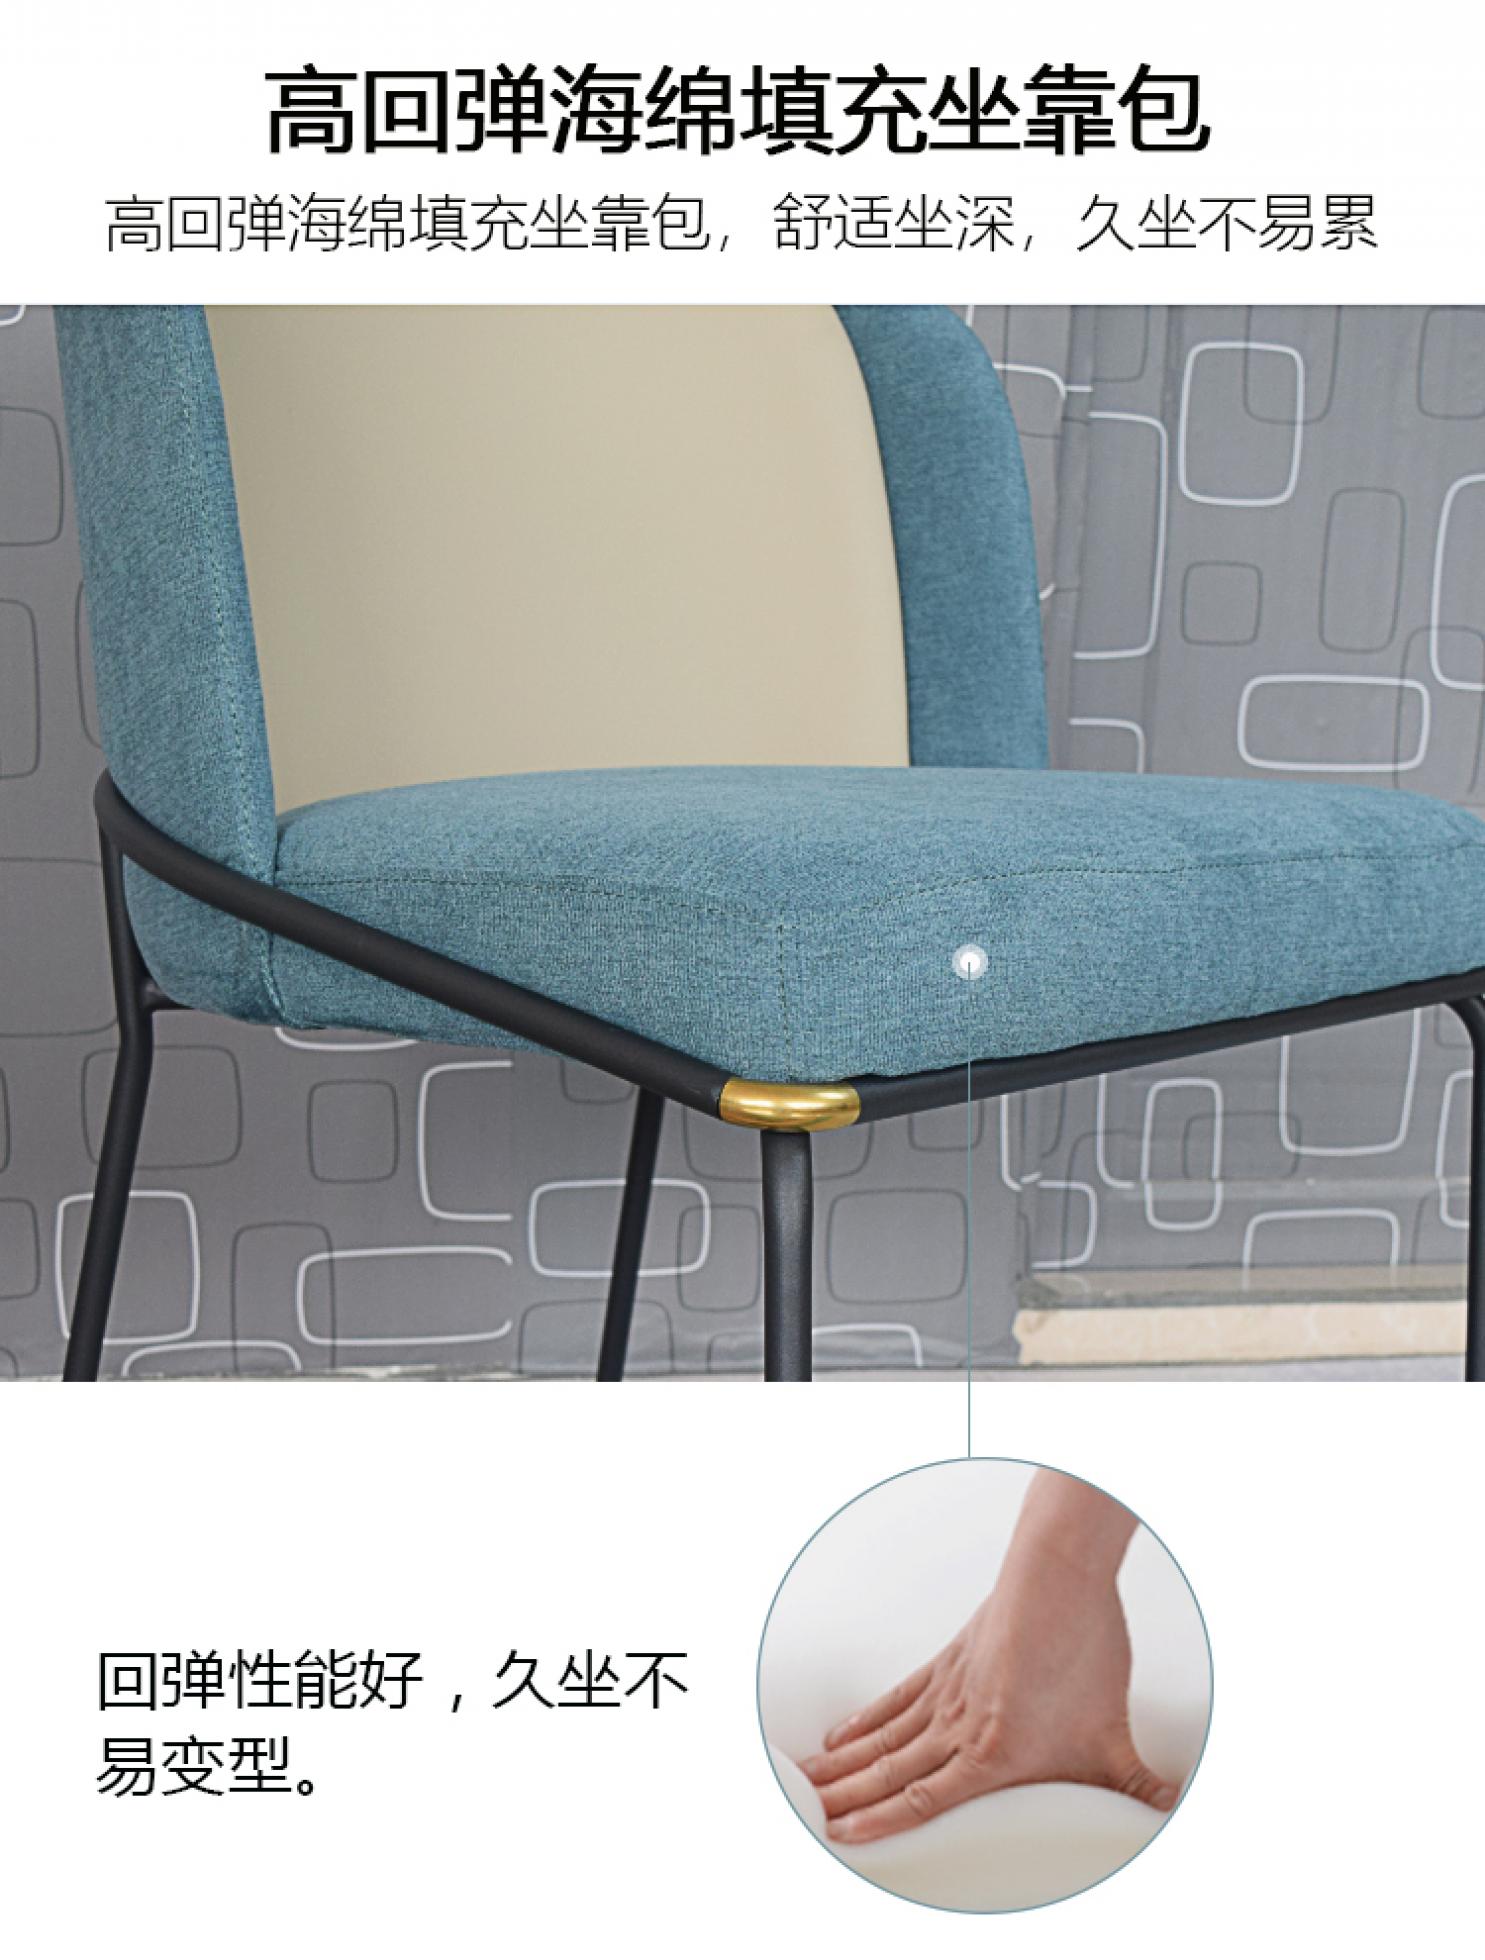 蓝色餐椅-详情页_05.jpg